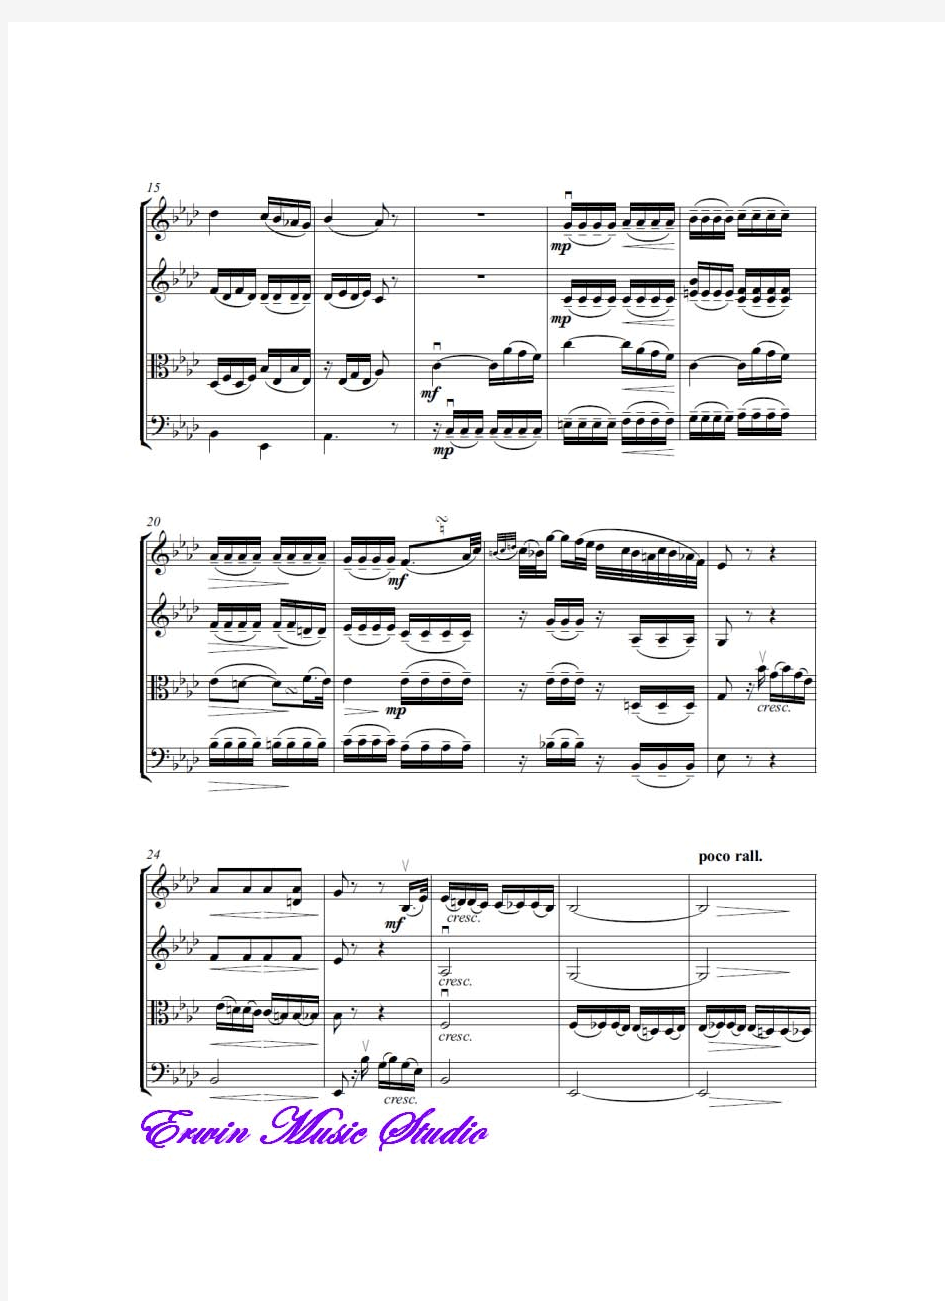 Score路德维希范贝多芬《慢板》选自悲怆奏鸣曲作品.13,弦乐四重奏总谱 分谱LudwigvanBeethoven,P